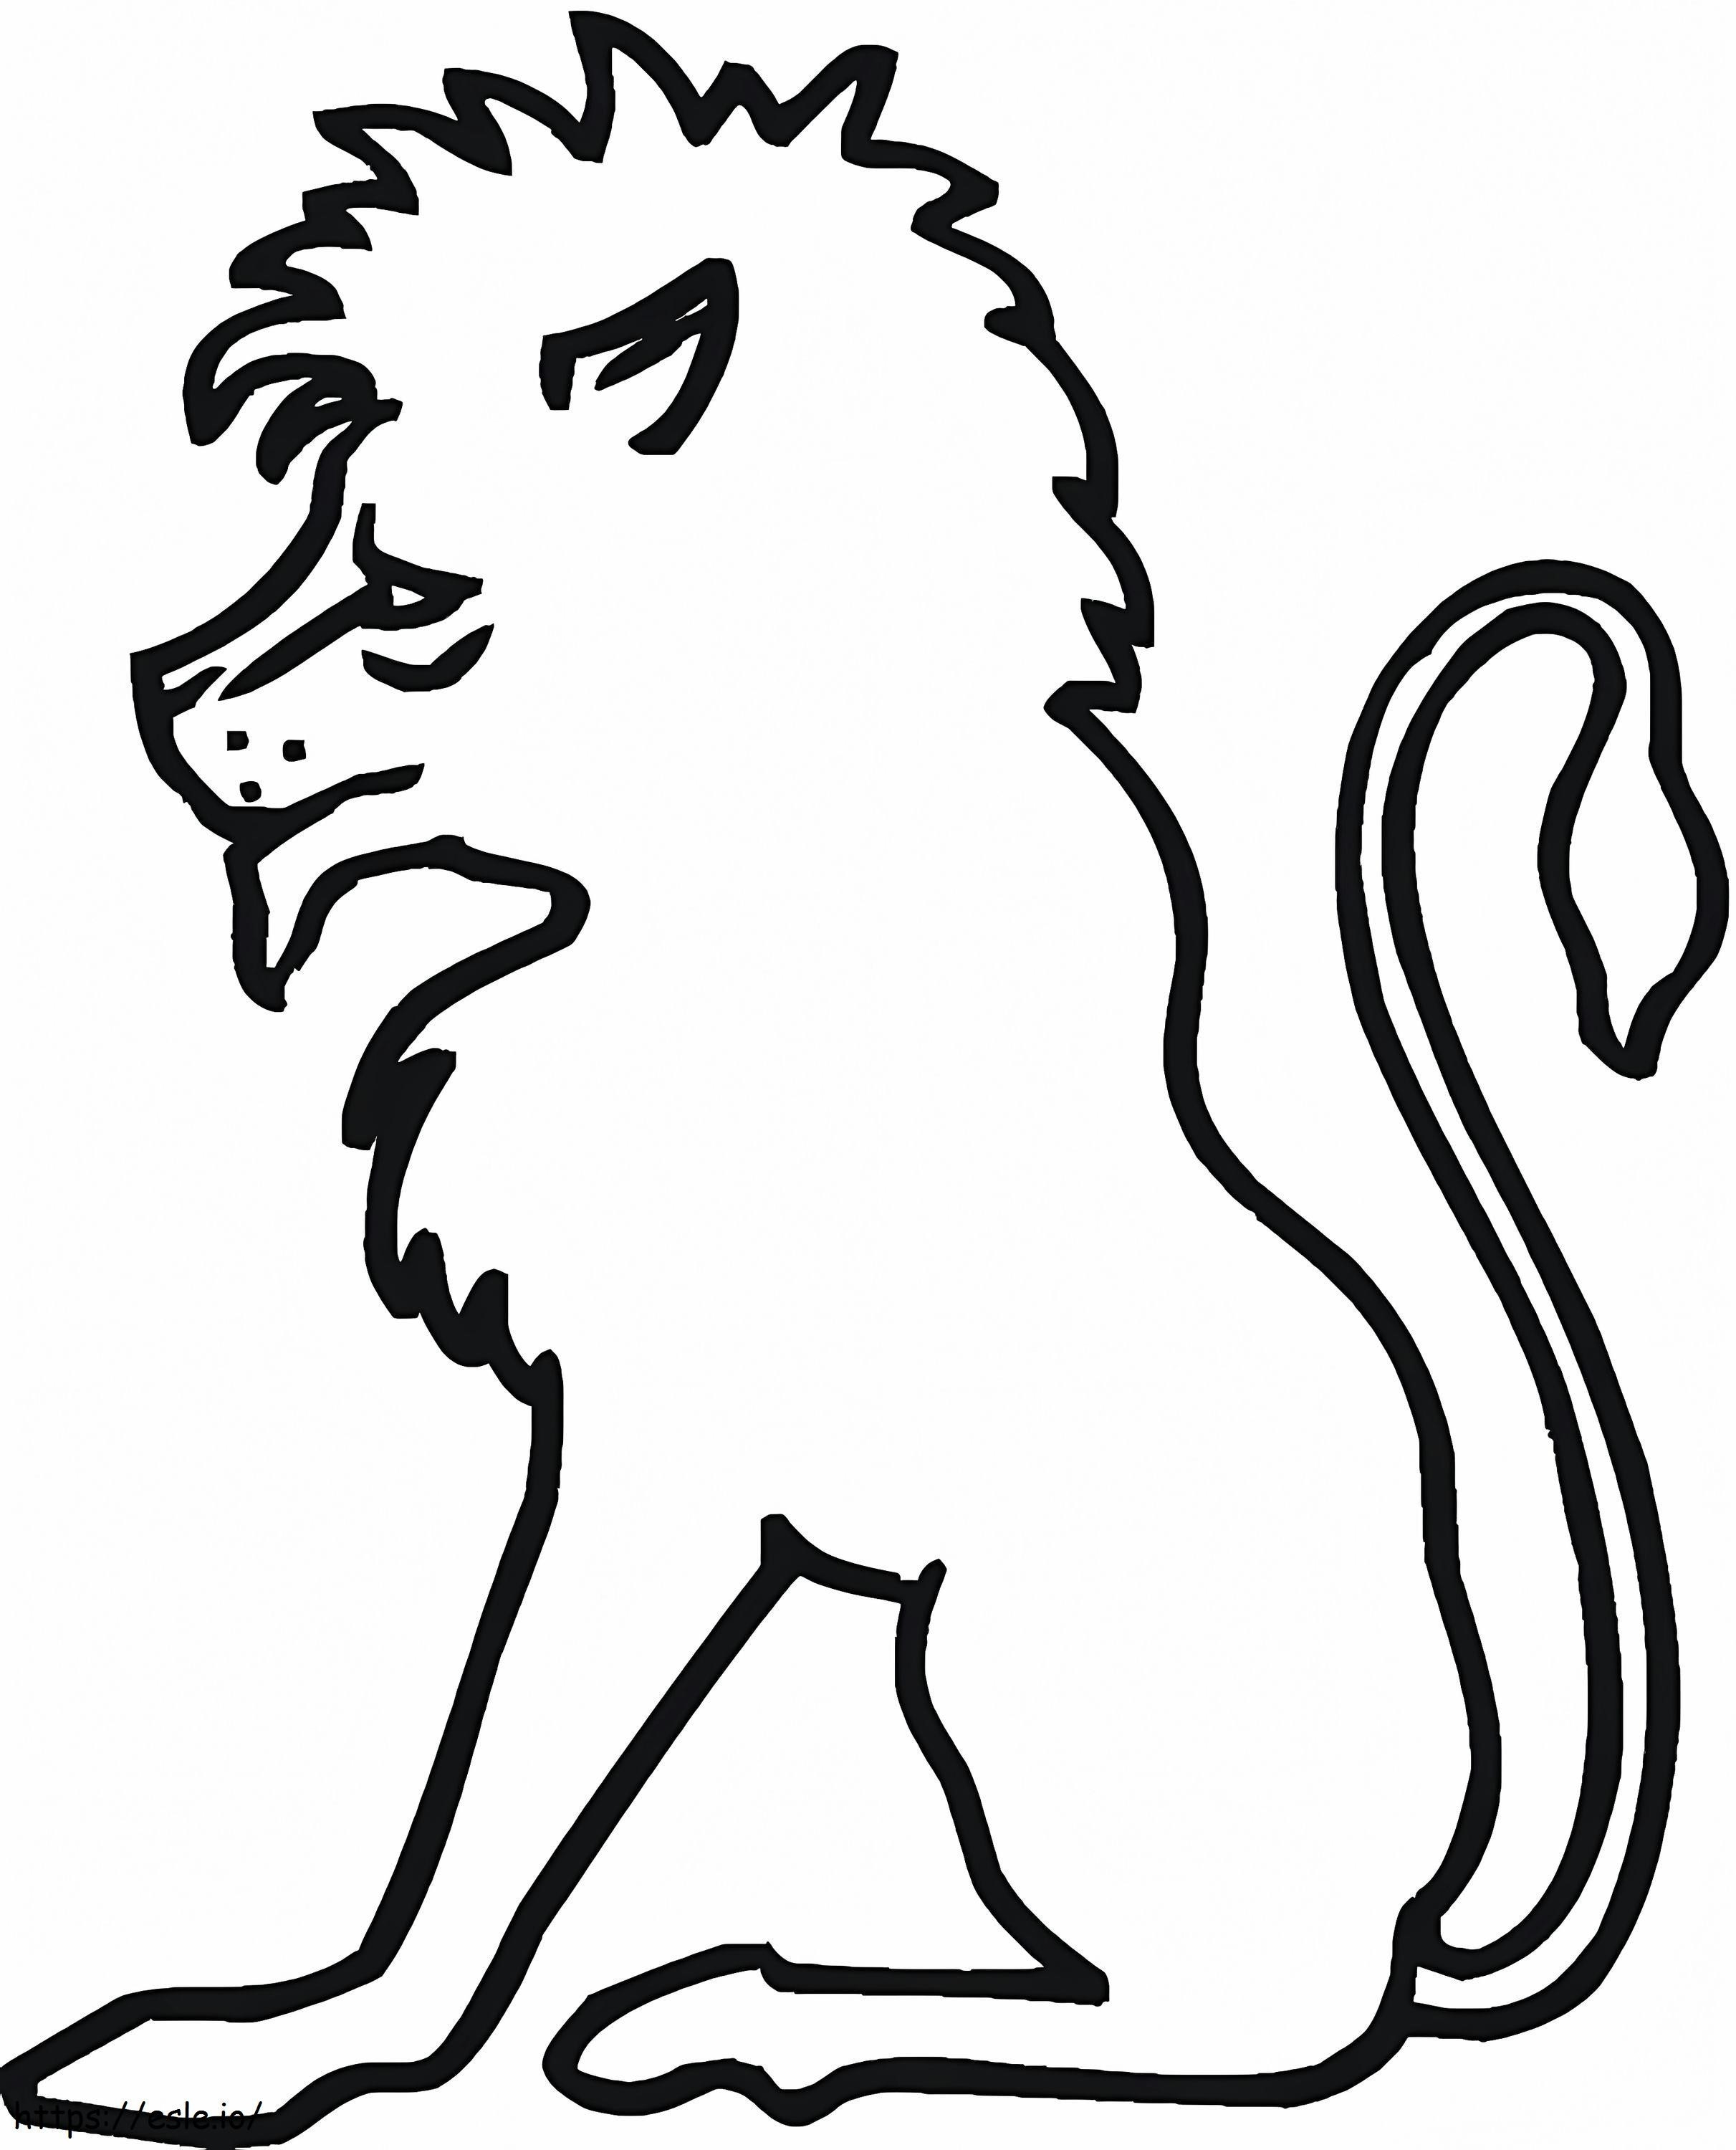 Löwen-Umriss ausmalbilder